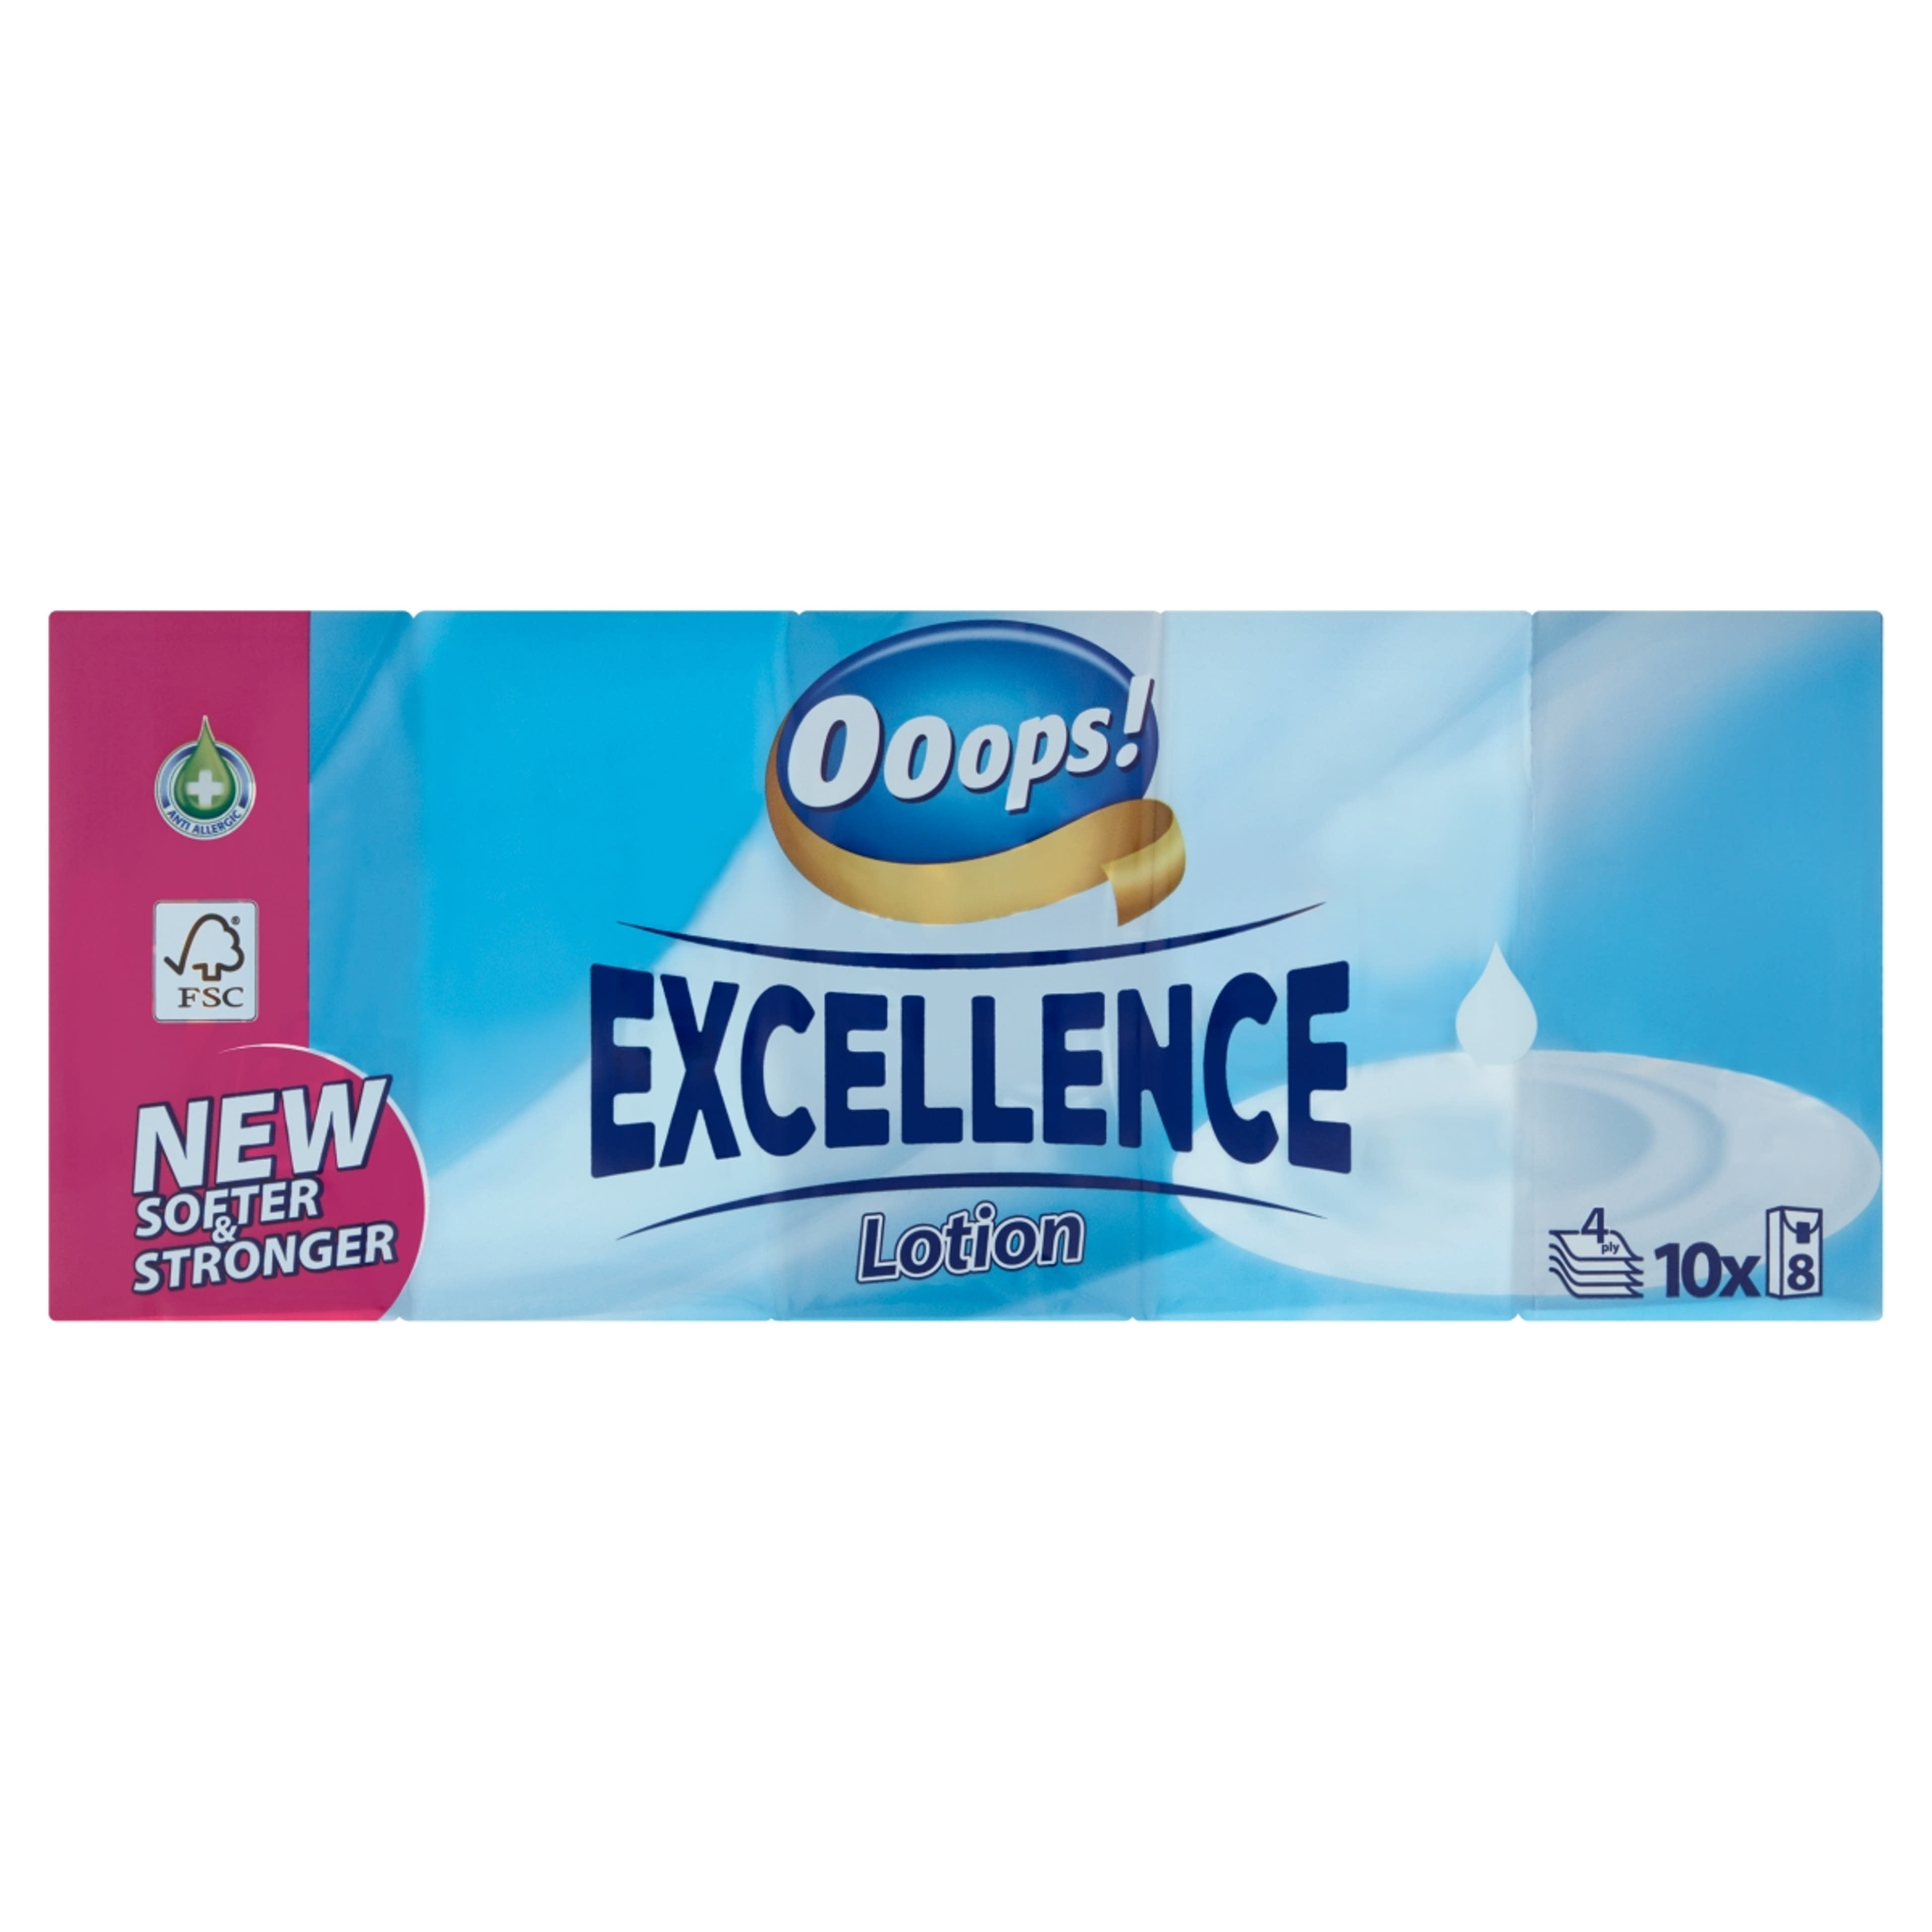 Ooops! Excellence Lotion illatosított papírzsebkendő, 4 rétegű, 10 x 8 db - 1 db